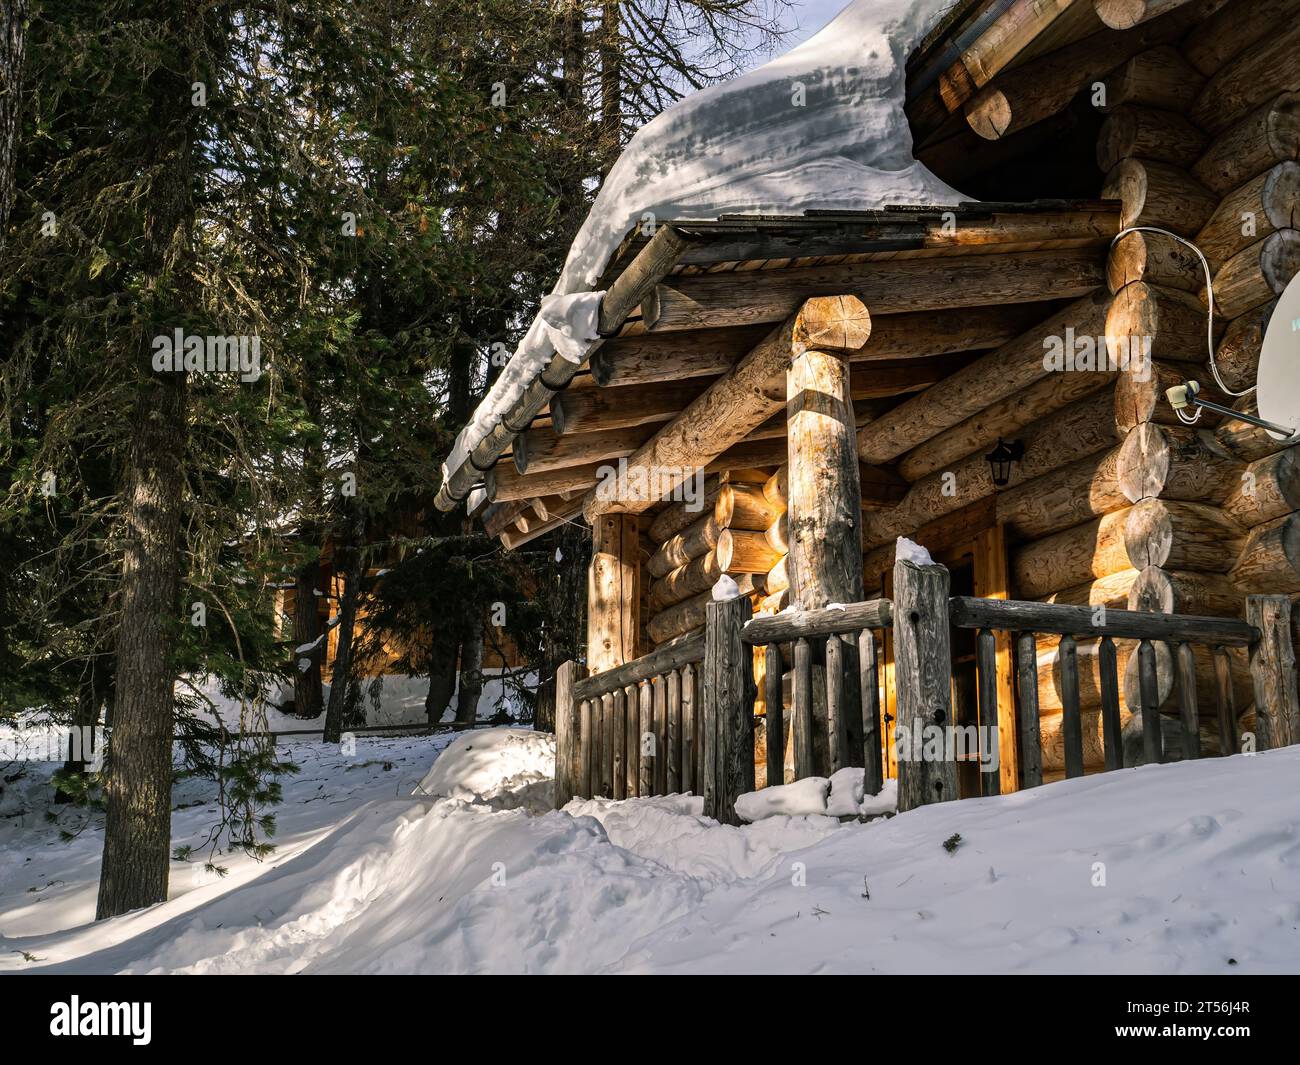 Porche d'une maison en rondins de bois dans une forêt, couverte de neige profonde et épaisse, Carinthie, Autriche Banque D'Images